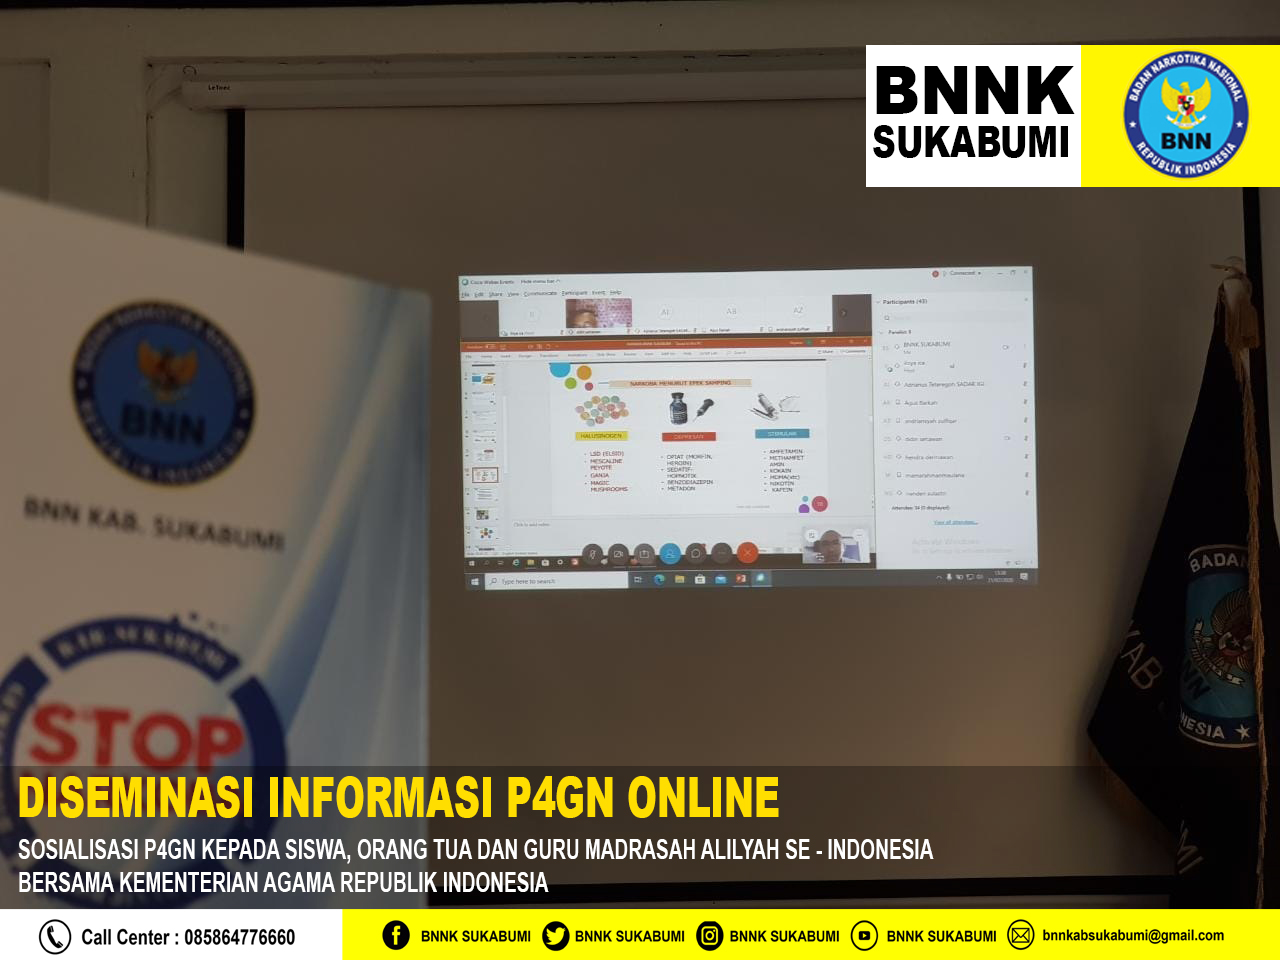 Diseminasi informasi P4GN kepada guru serta orang tua murid madrasah aliyah se - Indonesia